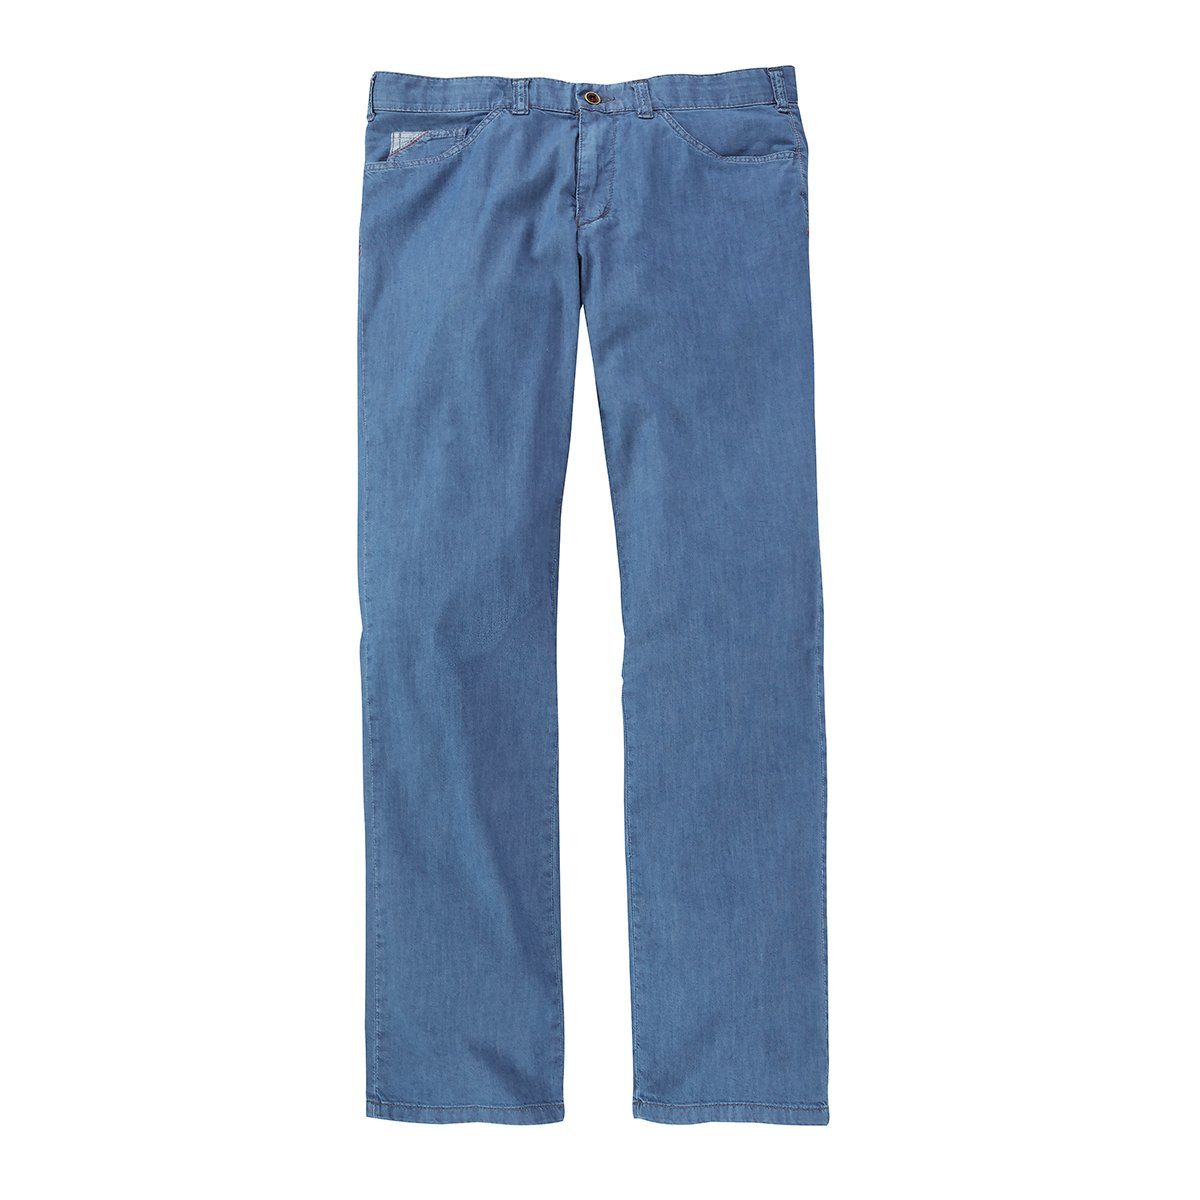 Comfort of Übergrößen Keno of Jeans superleichte Club Comfort Jeans hellblau Club Bequeme